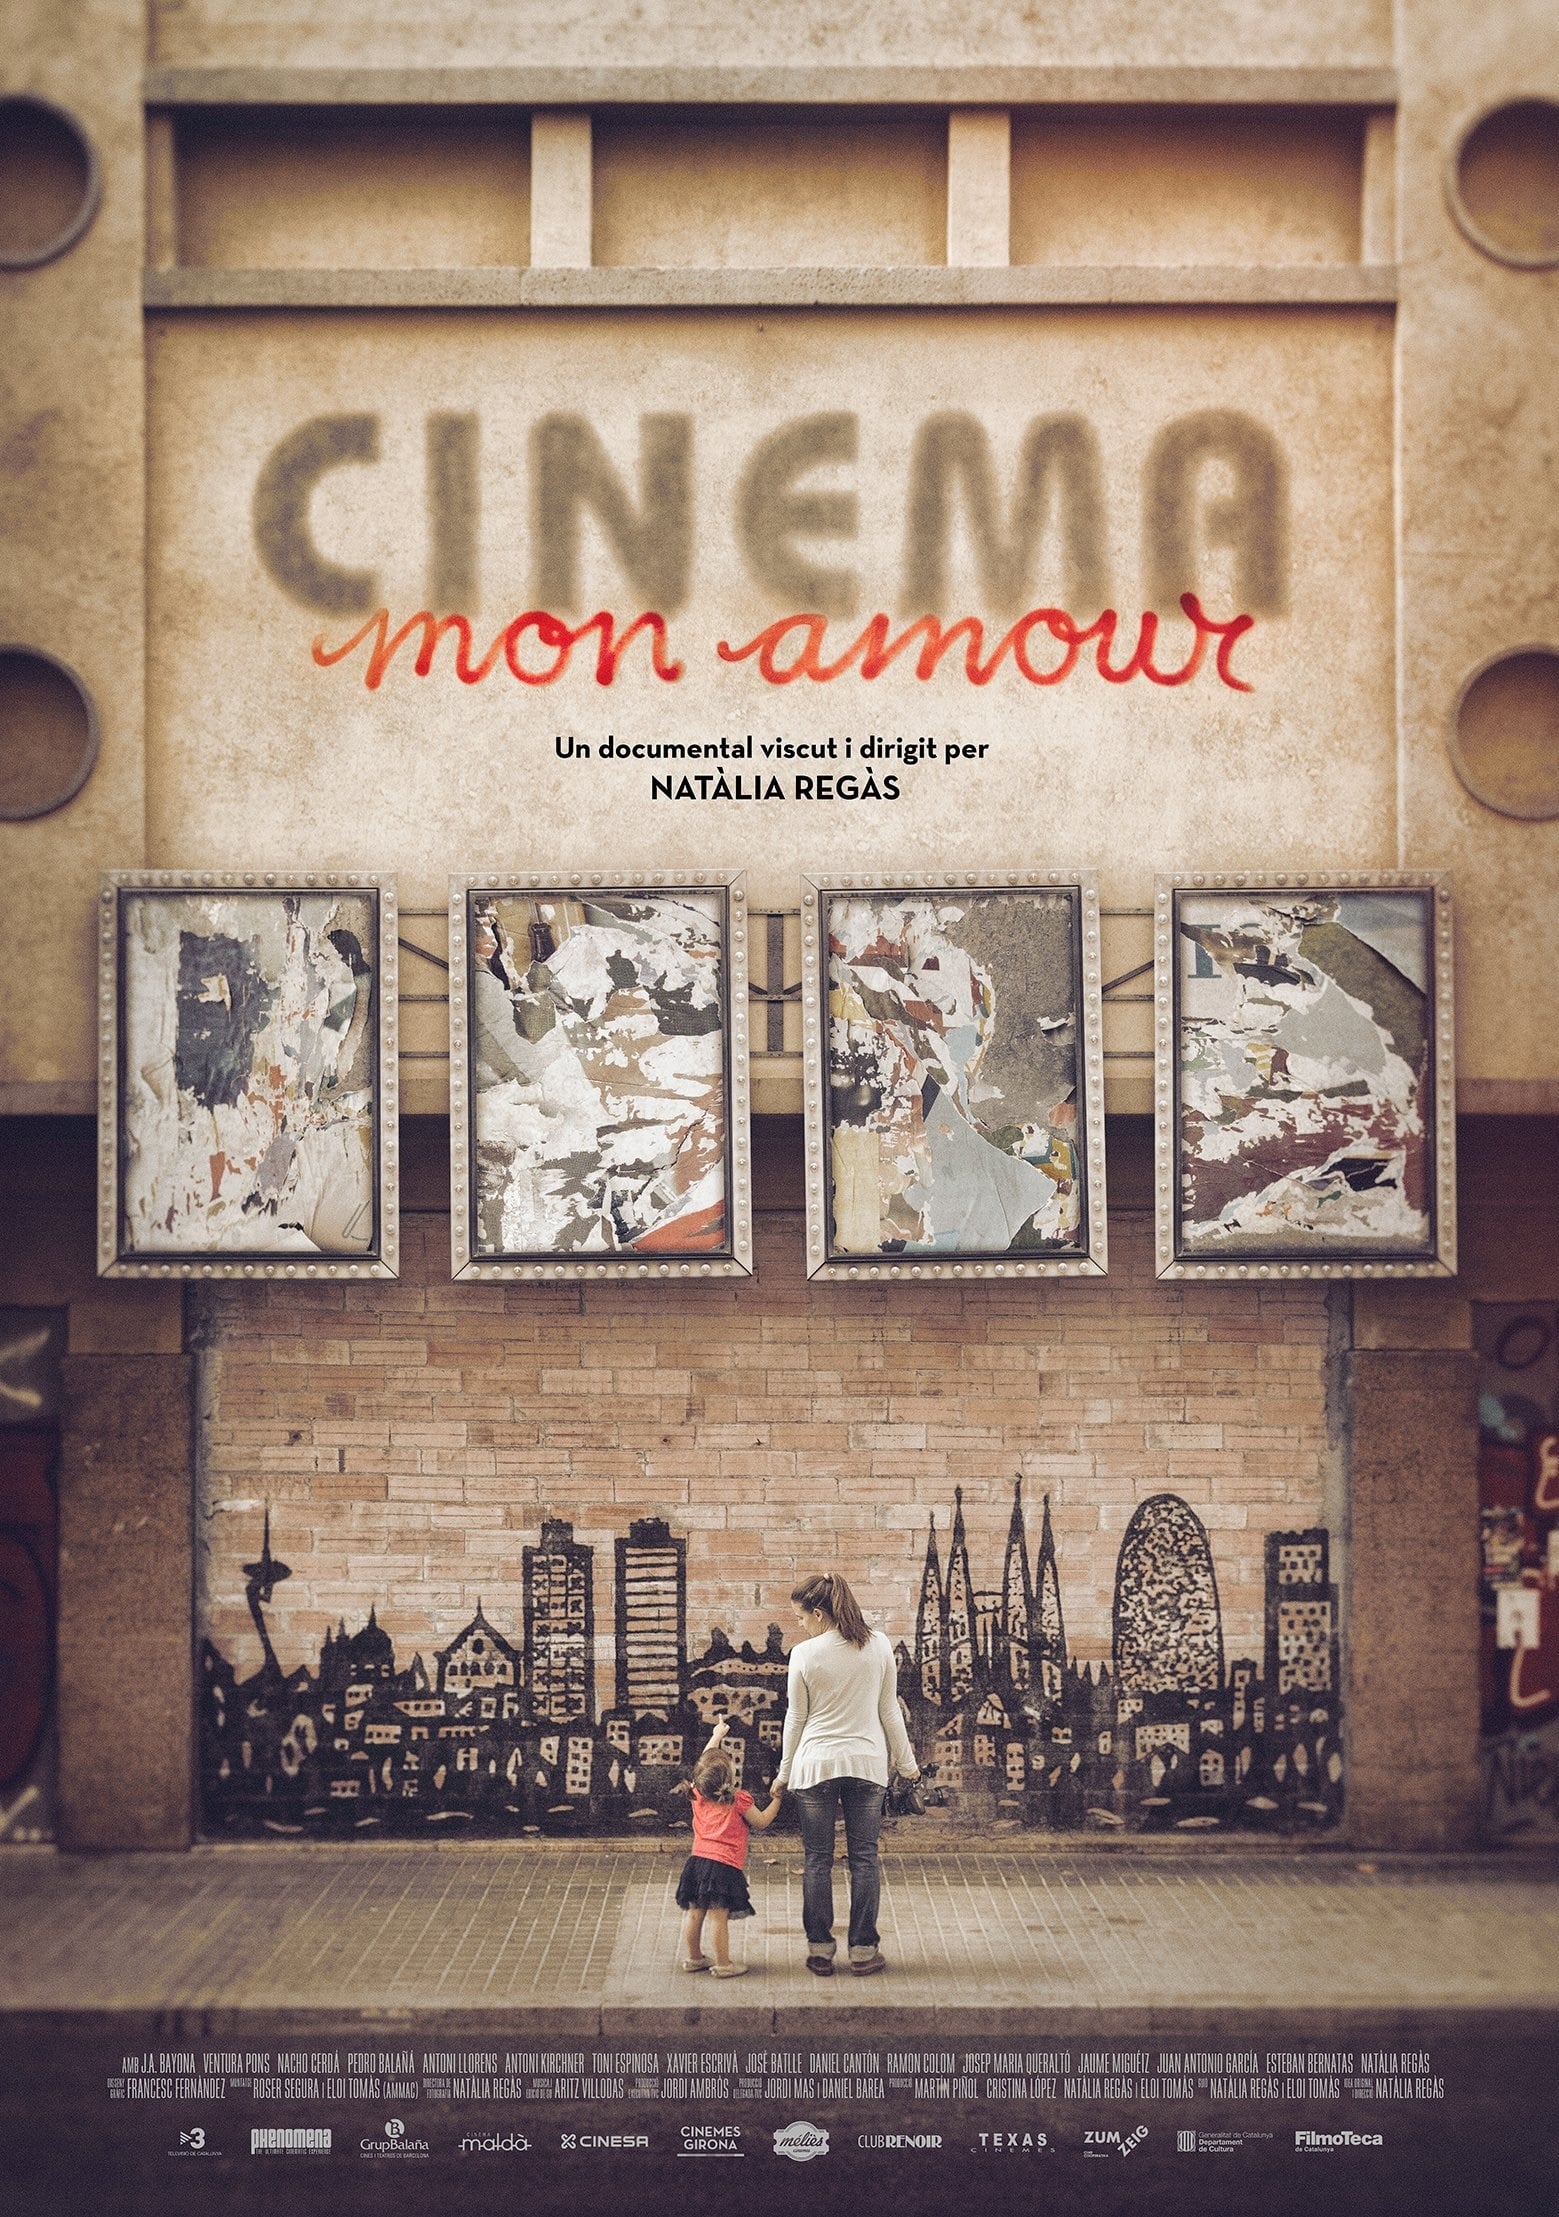 Caratula de Cinéma mon amour (Cine, amor mío) 